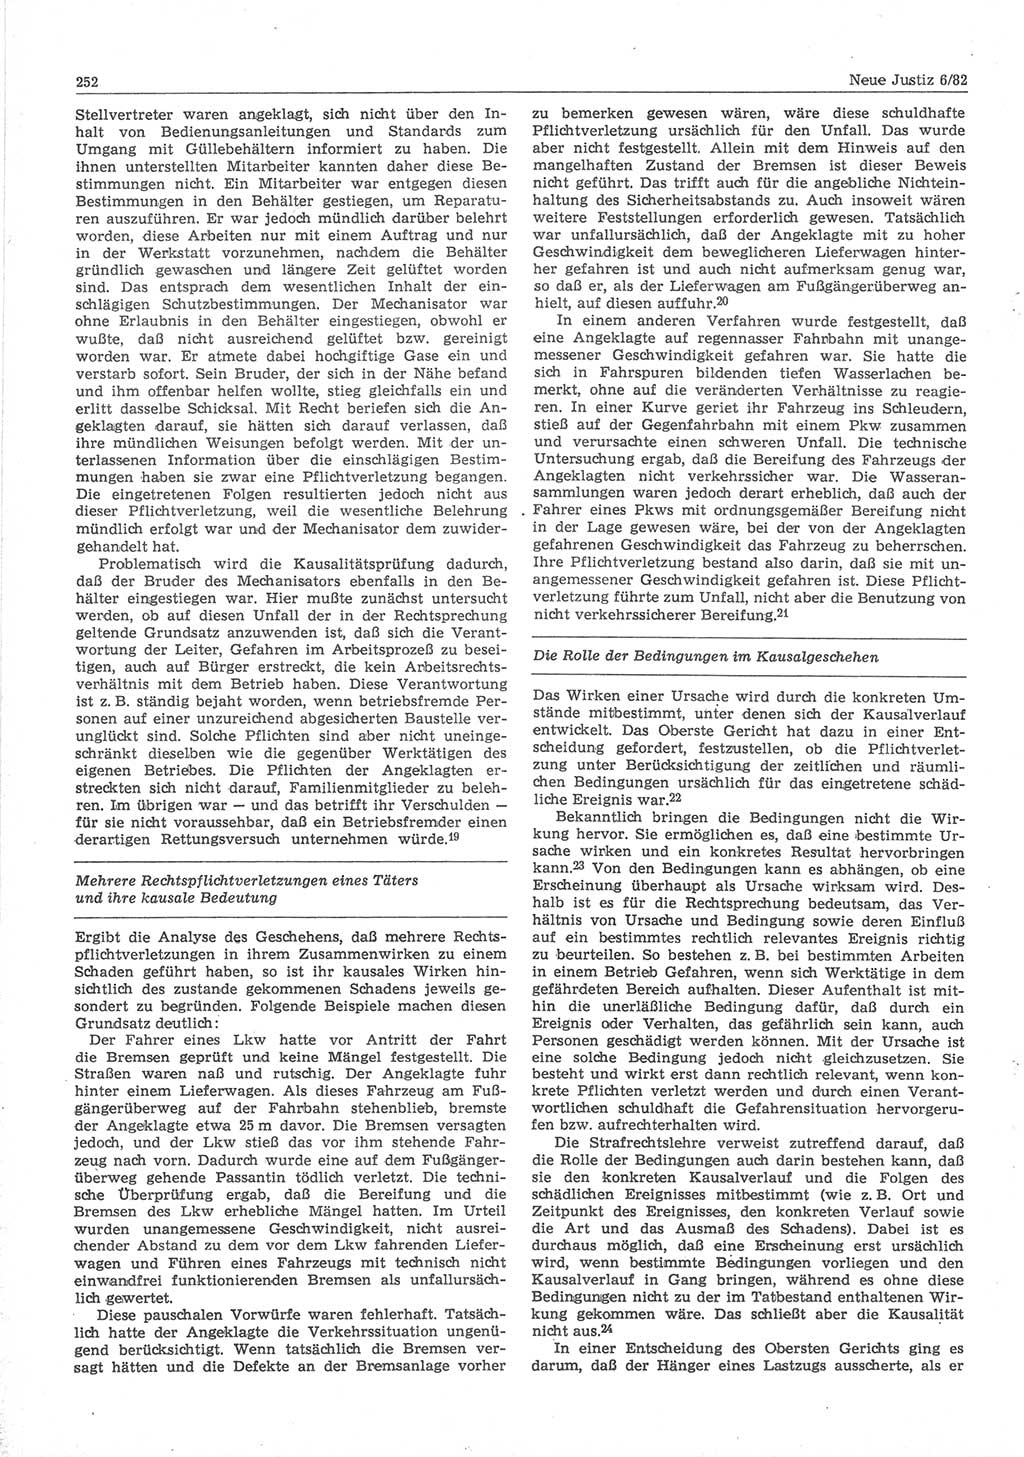 Neue Justiz (NJ), Zeitschrift für sozialistisches Recht und Gesetzlichkeit [Deutsche Demokratische Republik (DDR)], 36. Jahrgang 1982, Seite 252 (NJ DDR 1982, S. 252)